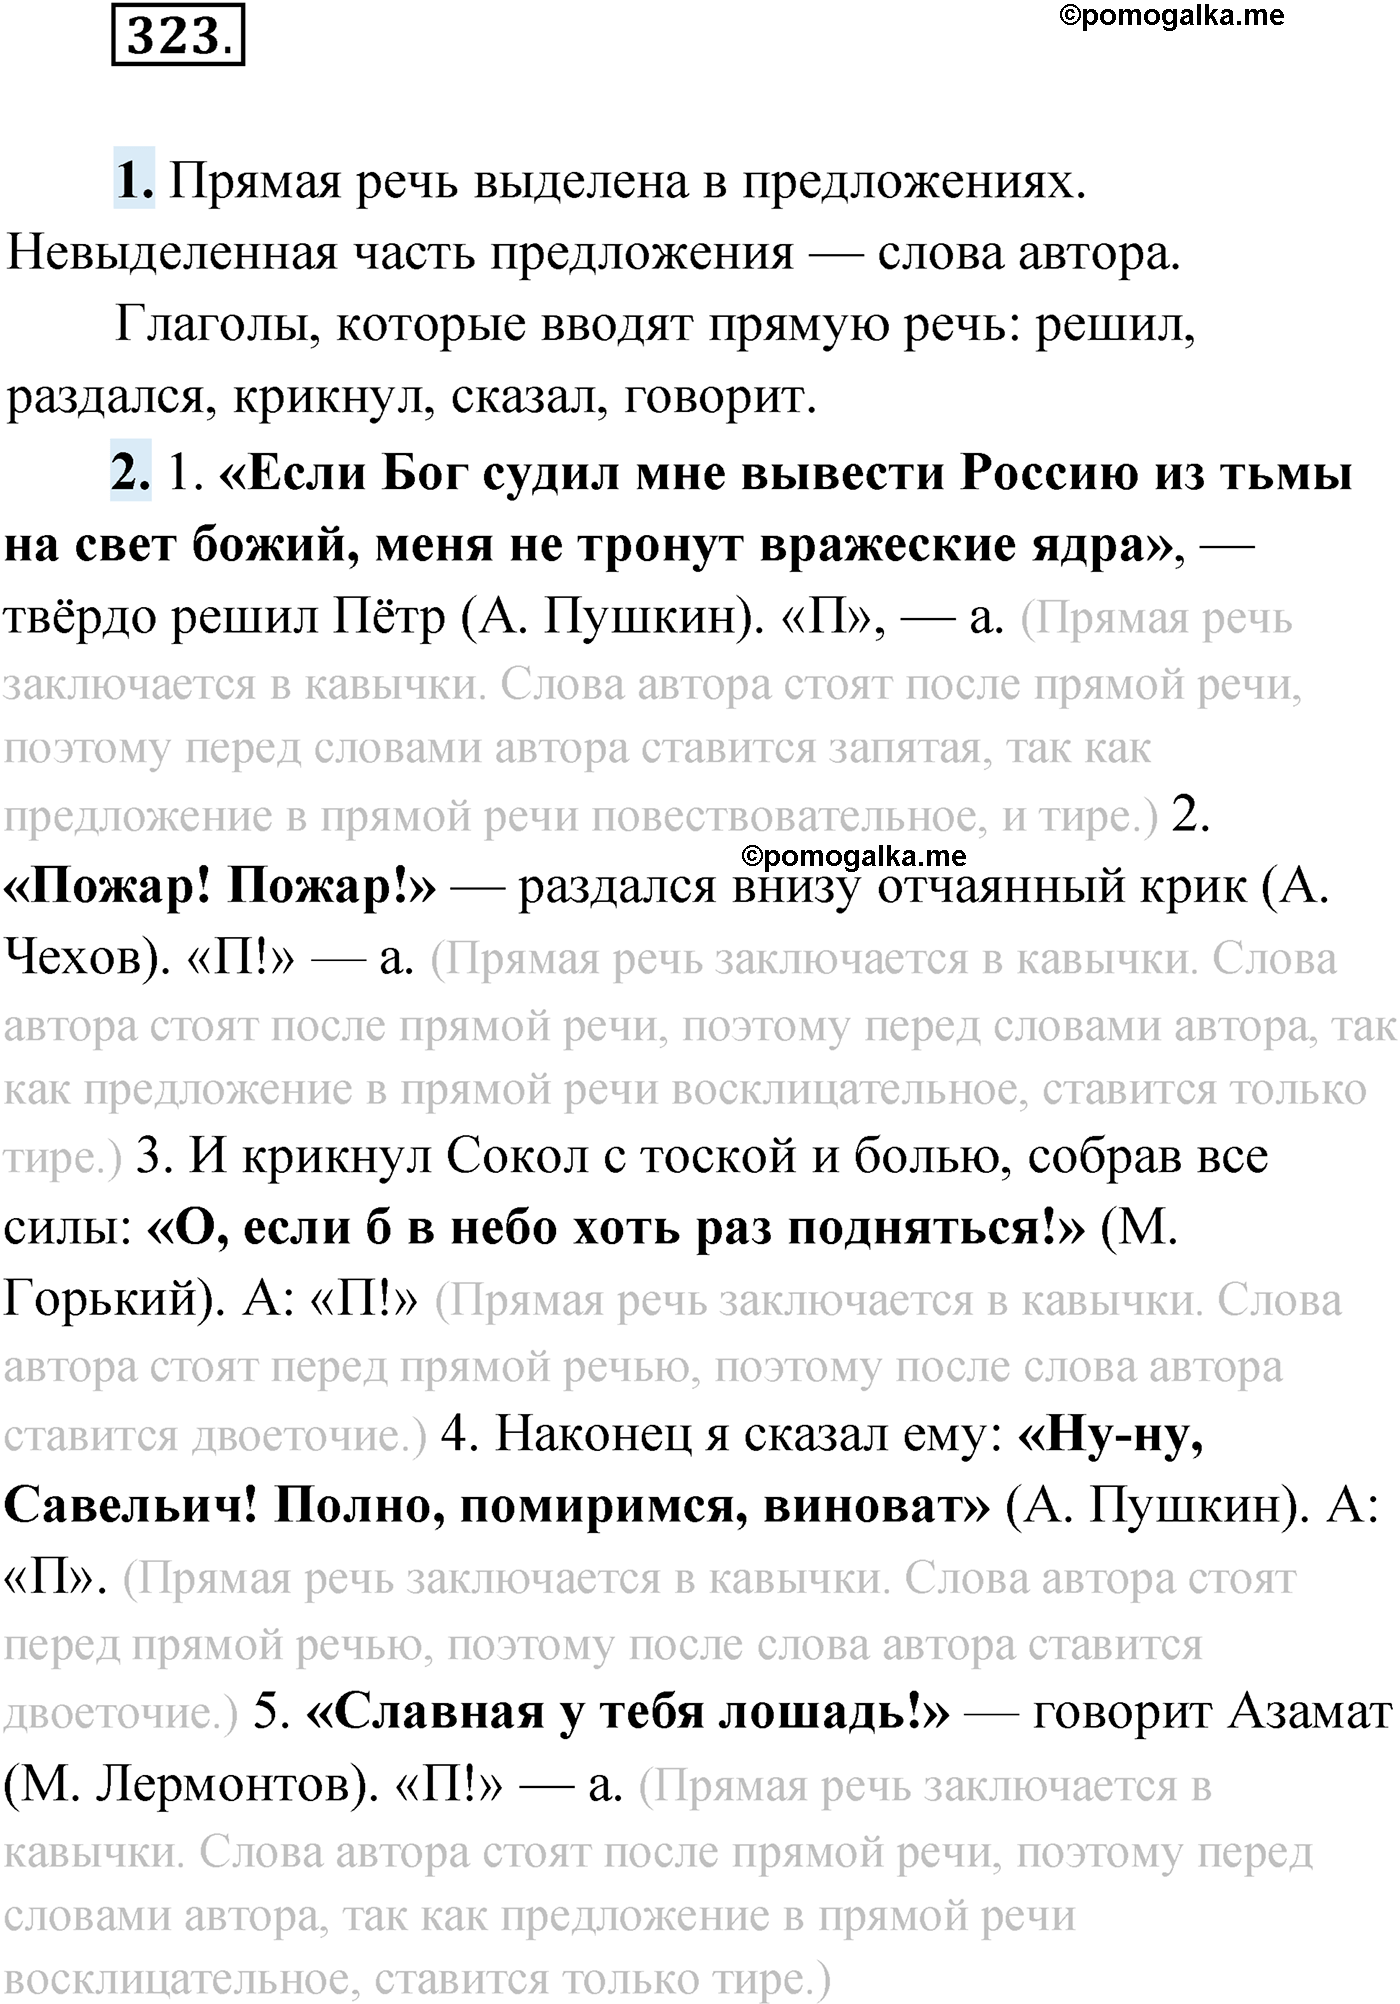 упражнение №323 русский язык 9 класс Мурина 2019 год